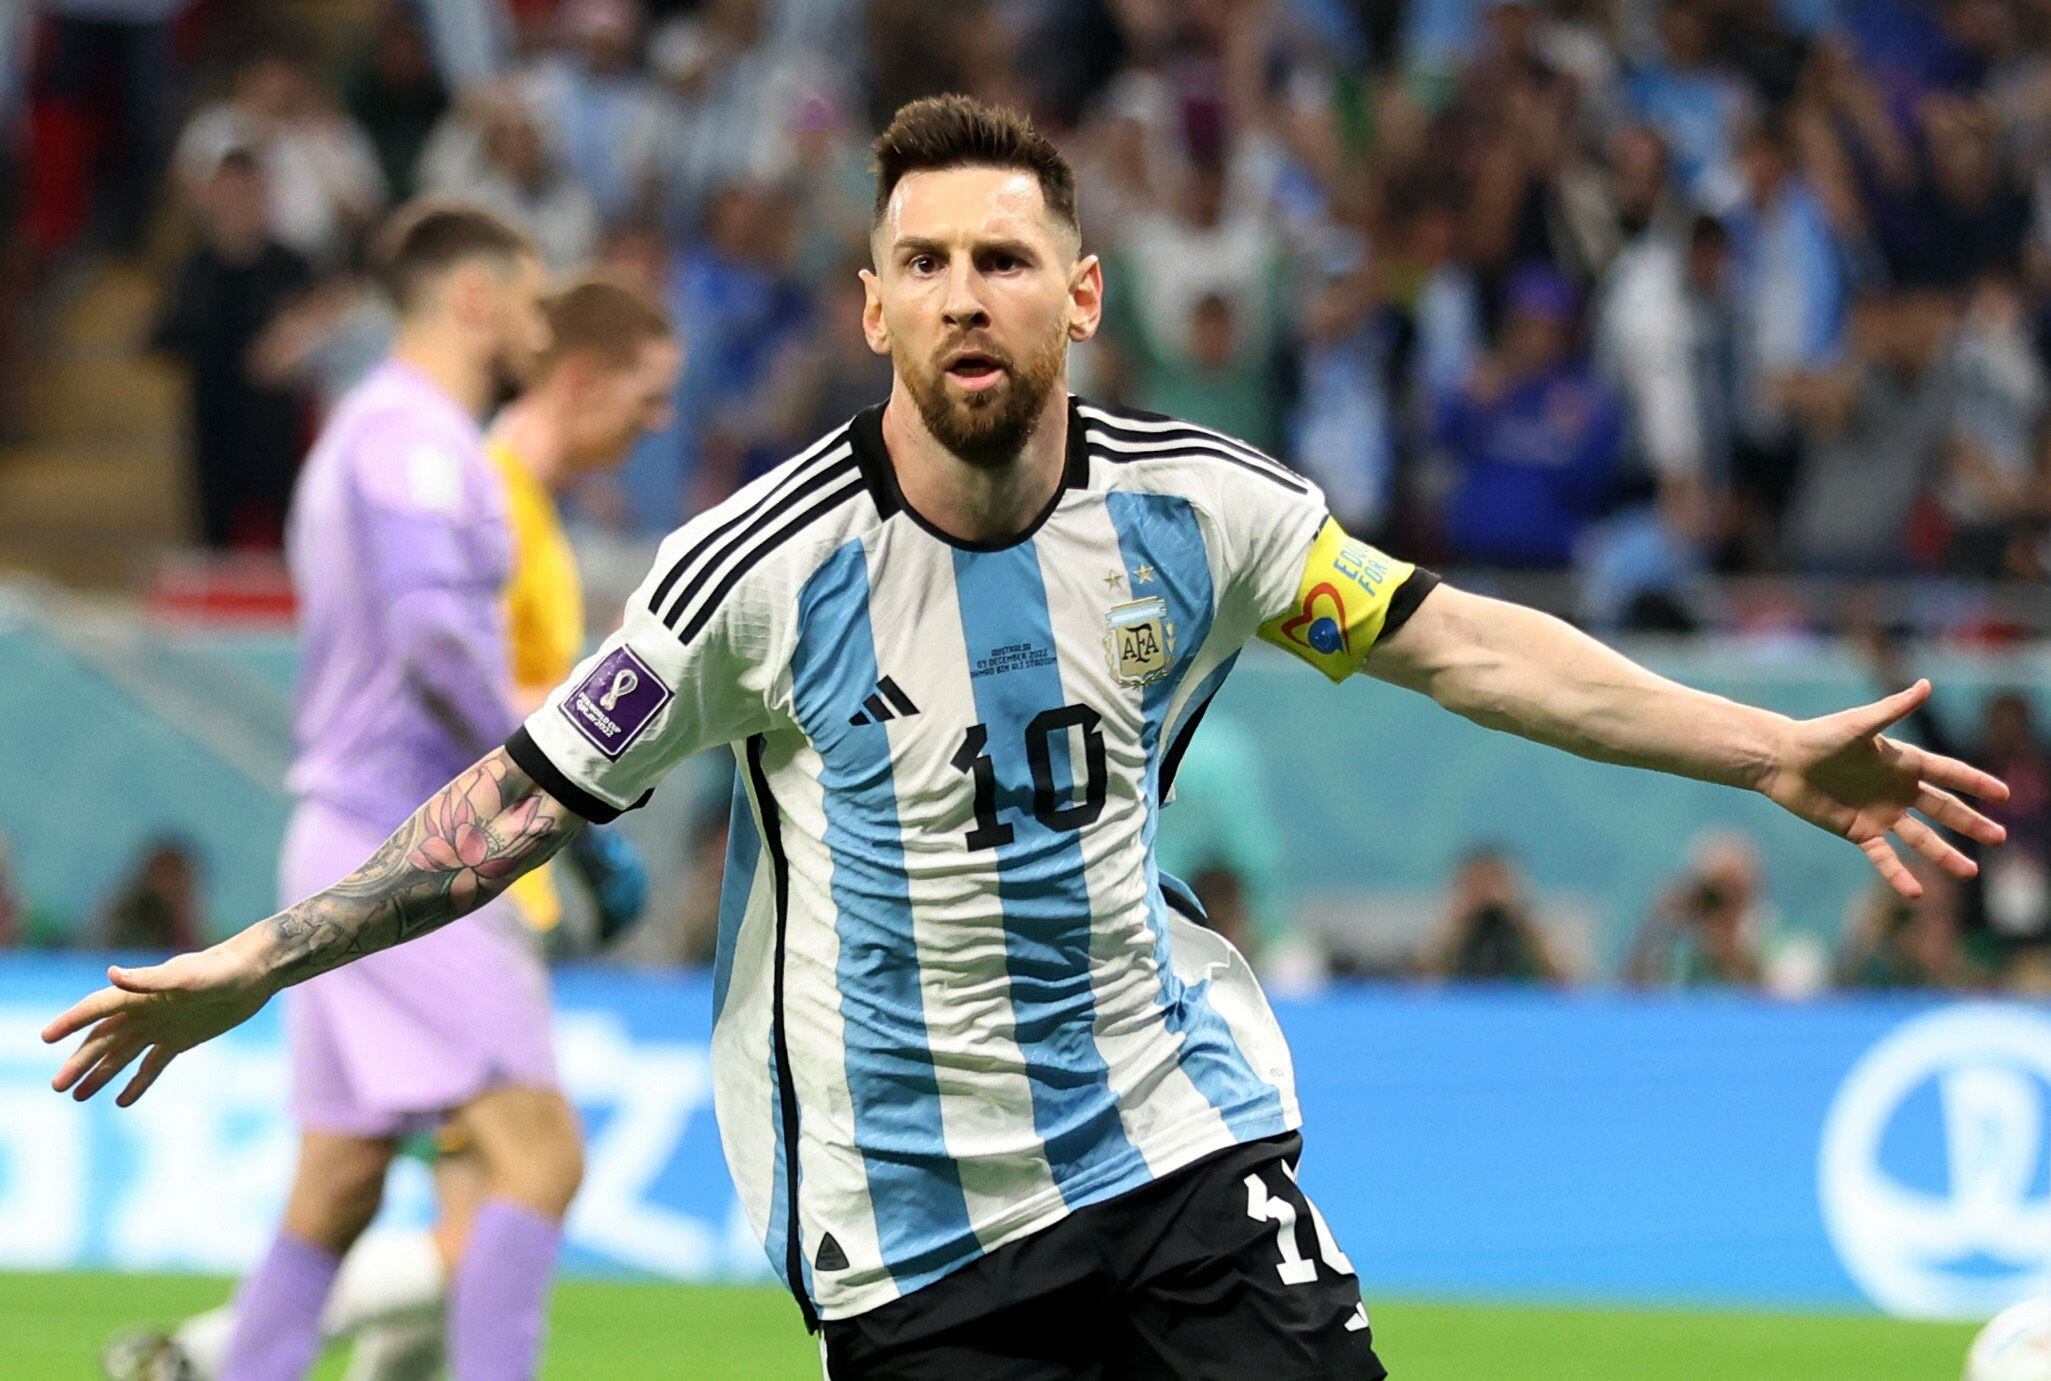 Lionel Messi celebra su gol a Australia en los octavos de final, el primero suyo en una fase eliminatoria en la Copa del Mundo. Puede seguir haciendo historia en Qatar 2022 (REUTERS/Carl Recine)